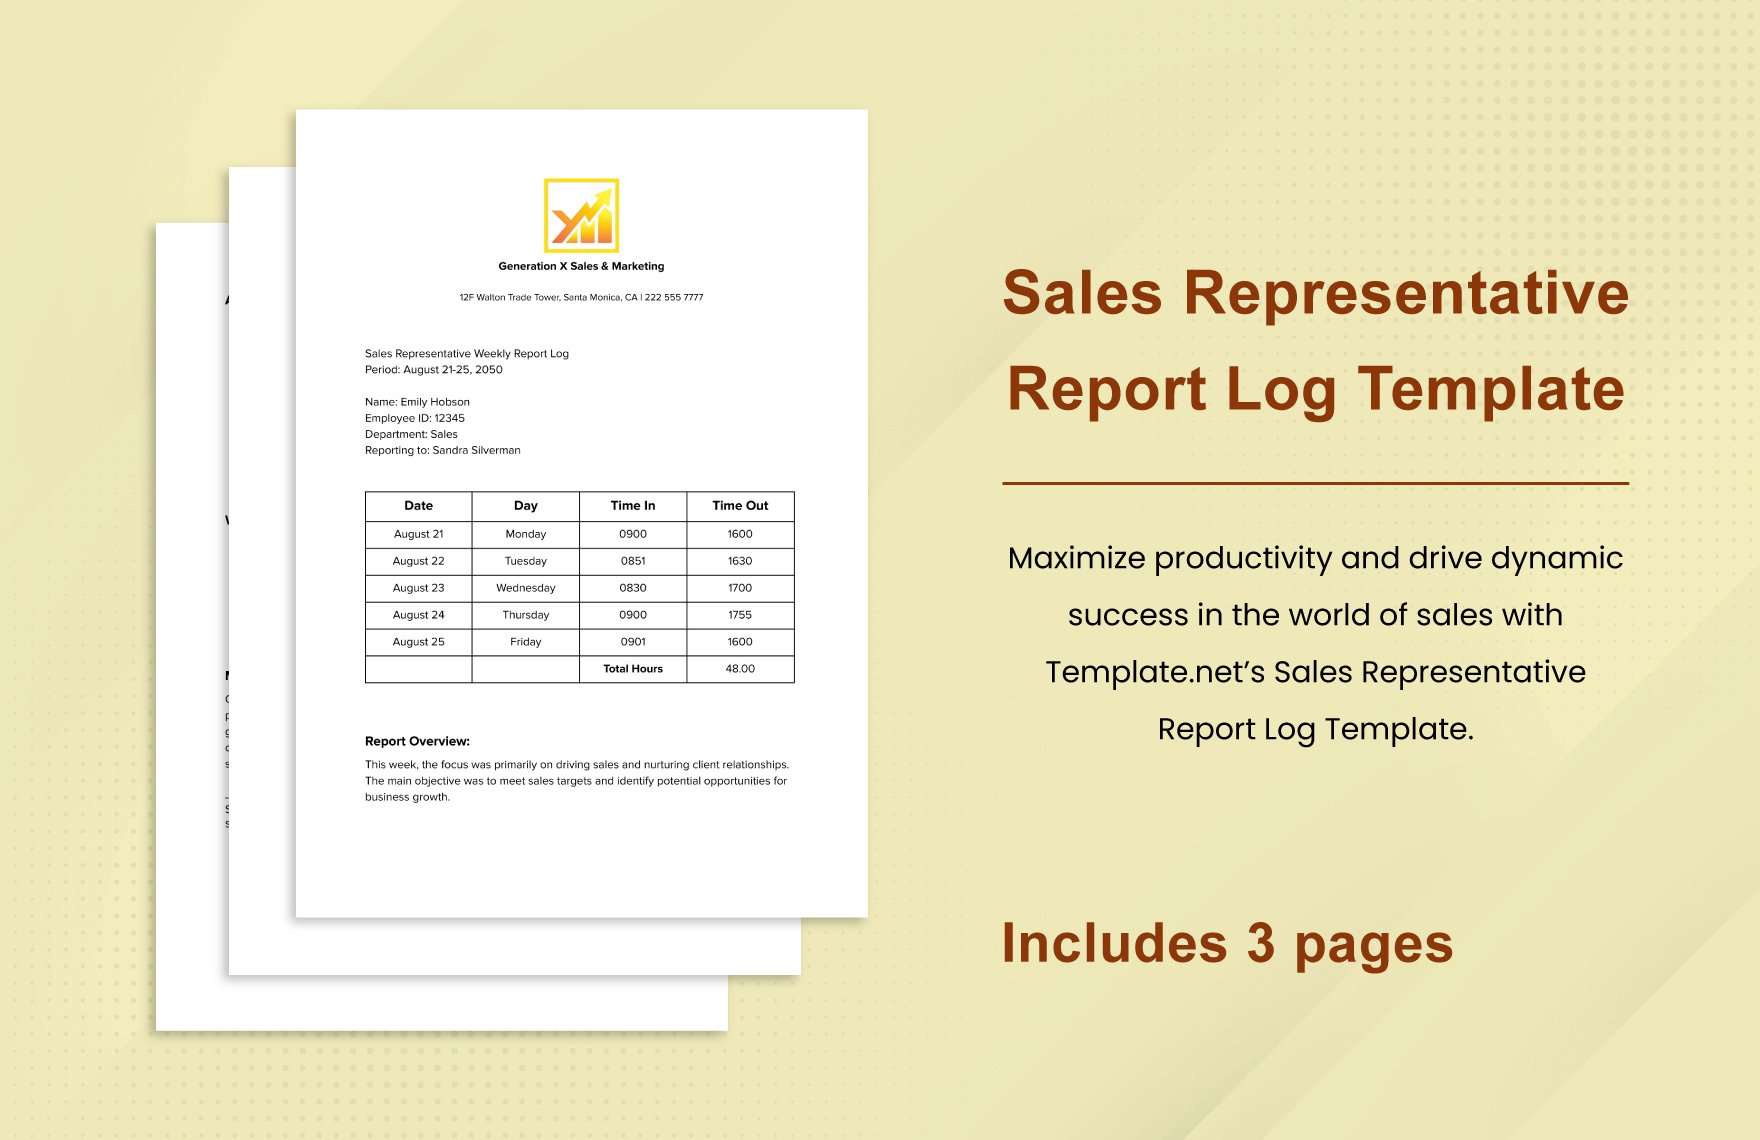 Sales Representative Report Log Template in Word, Google Docs, PDF